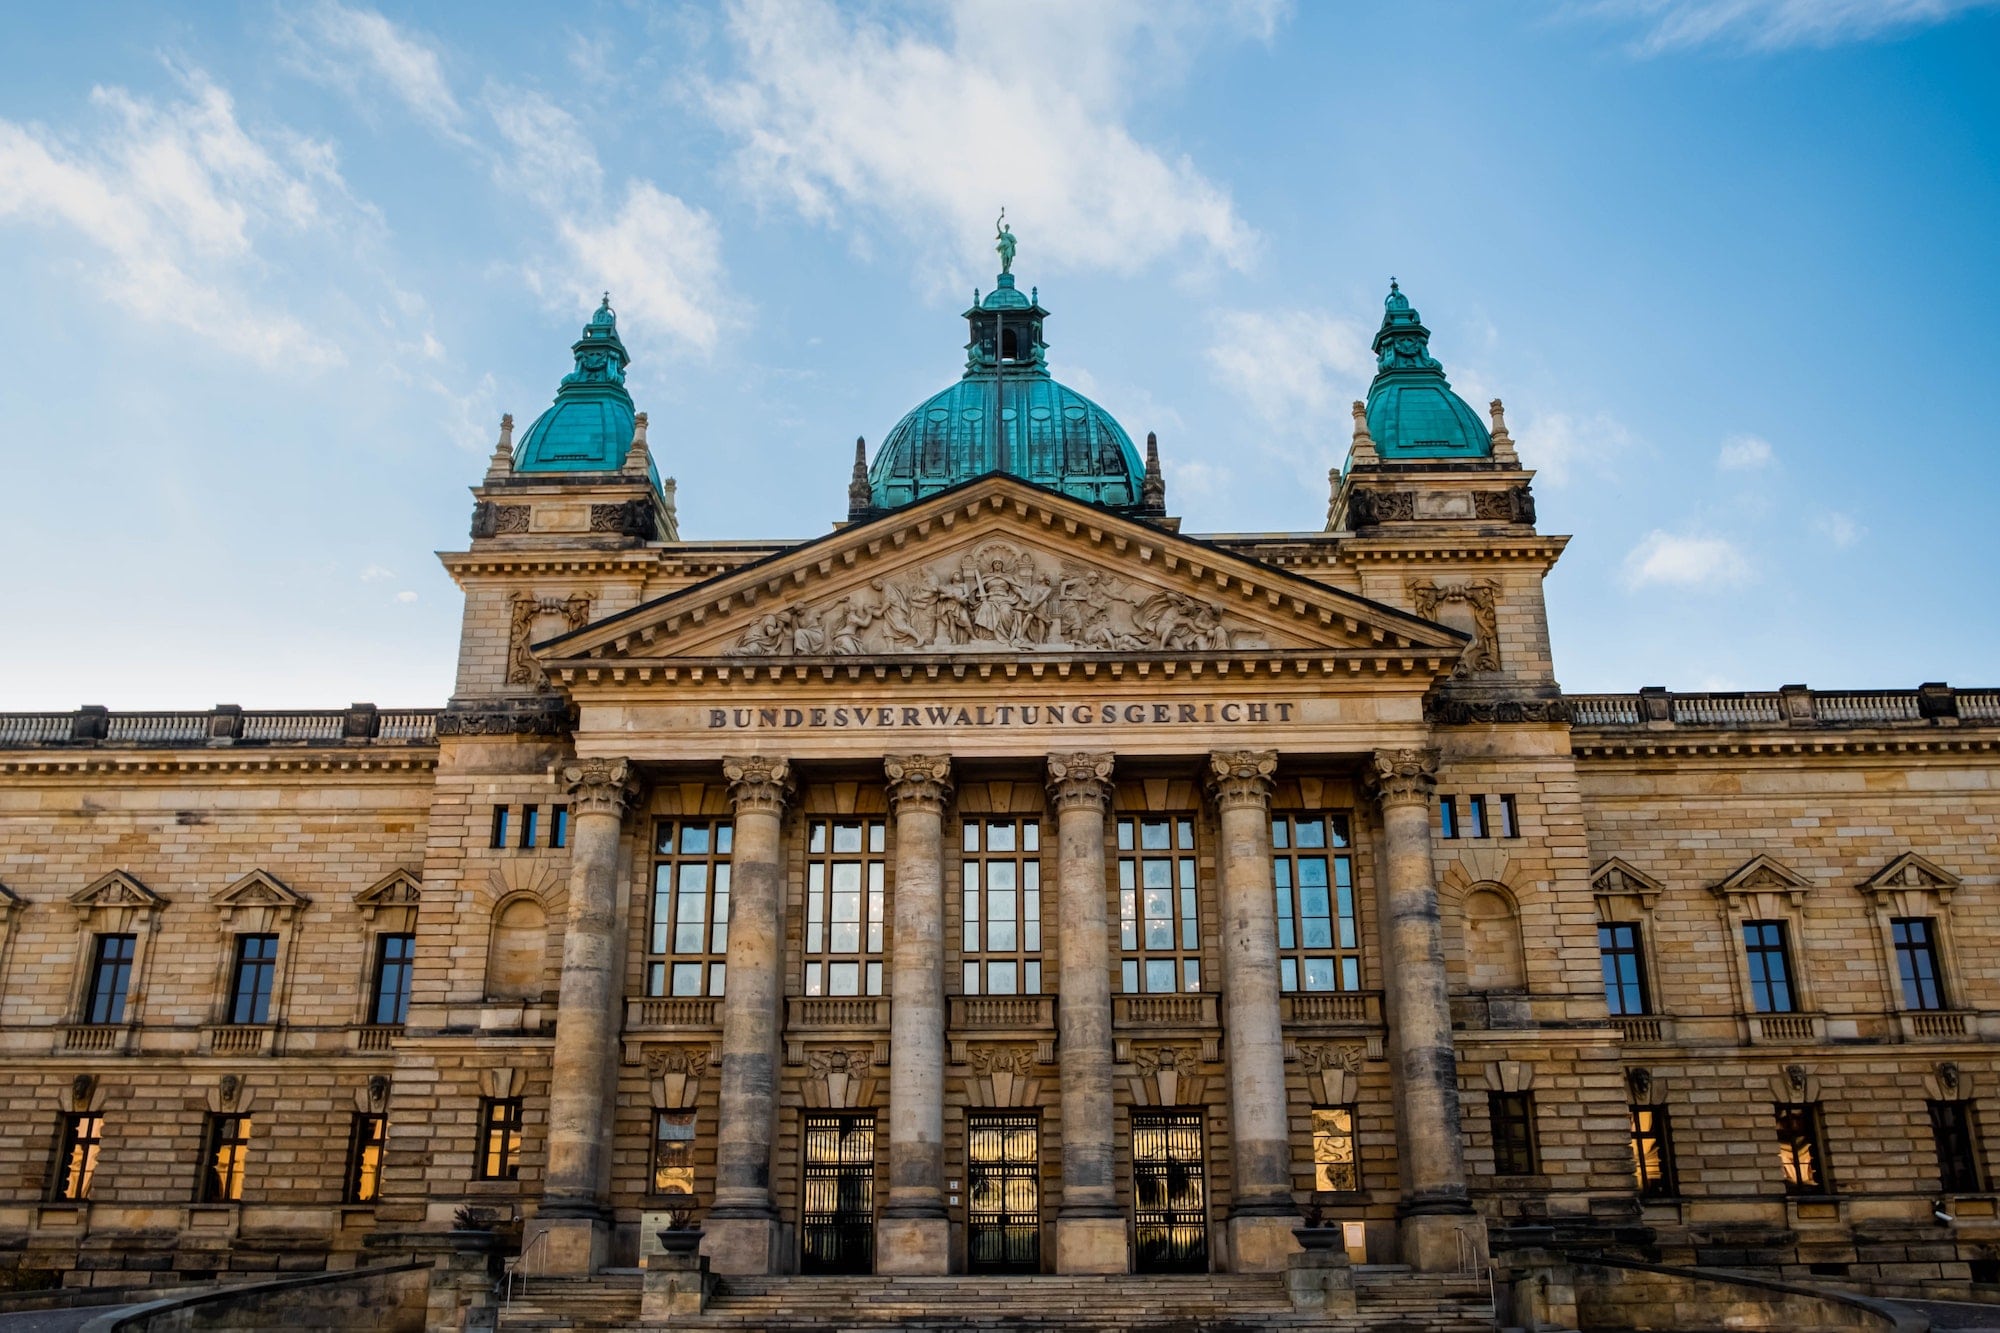 Die Bürgermeisterinnen und Bürgermeister der drei größten deutschen Städte haben eine gemeinsame Initiative gestartet